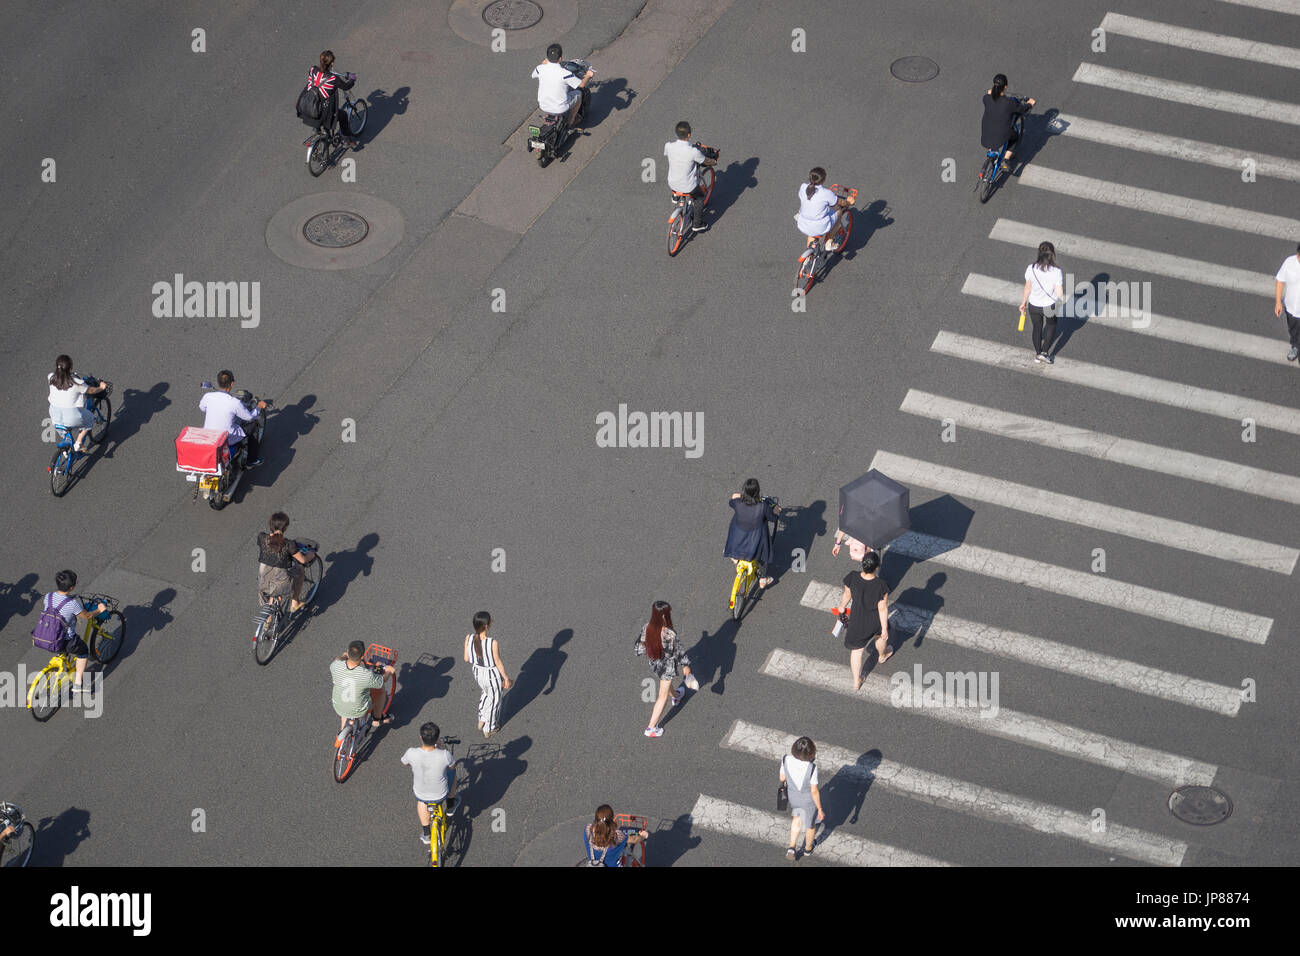 Los peatones, ciclistas y motos cruzando la calle a través de un paso de peatones, mientras que los taxis esperan caminar a través de una amplia calle de la ciudad con paso de peatones Foto de stock